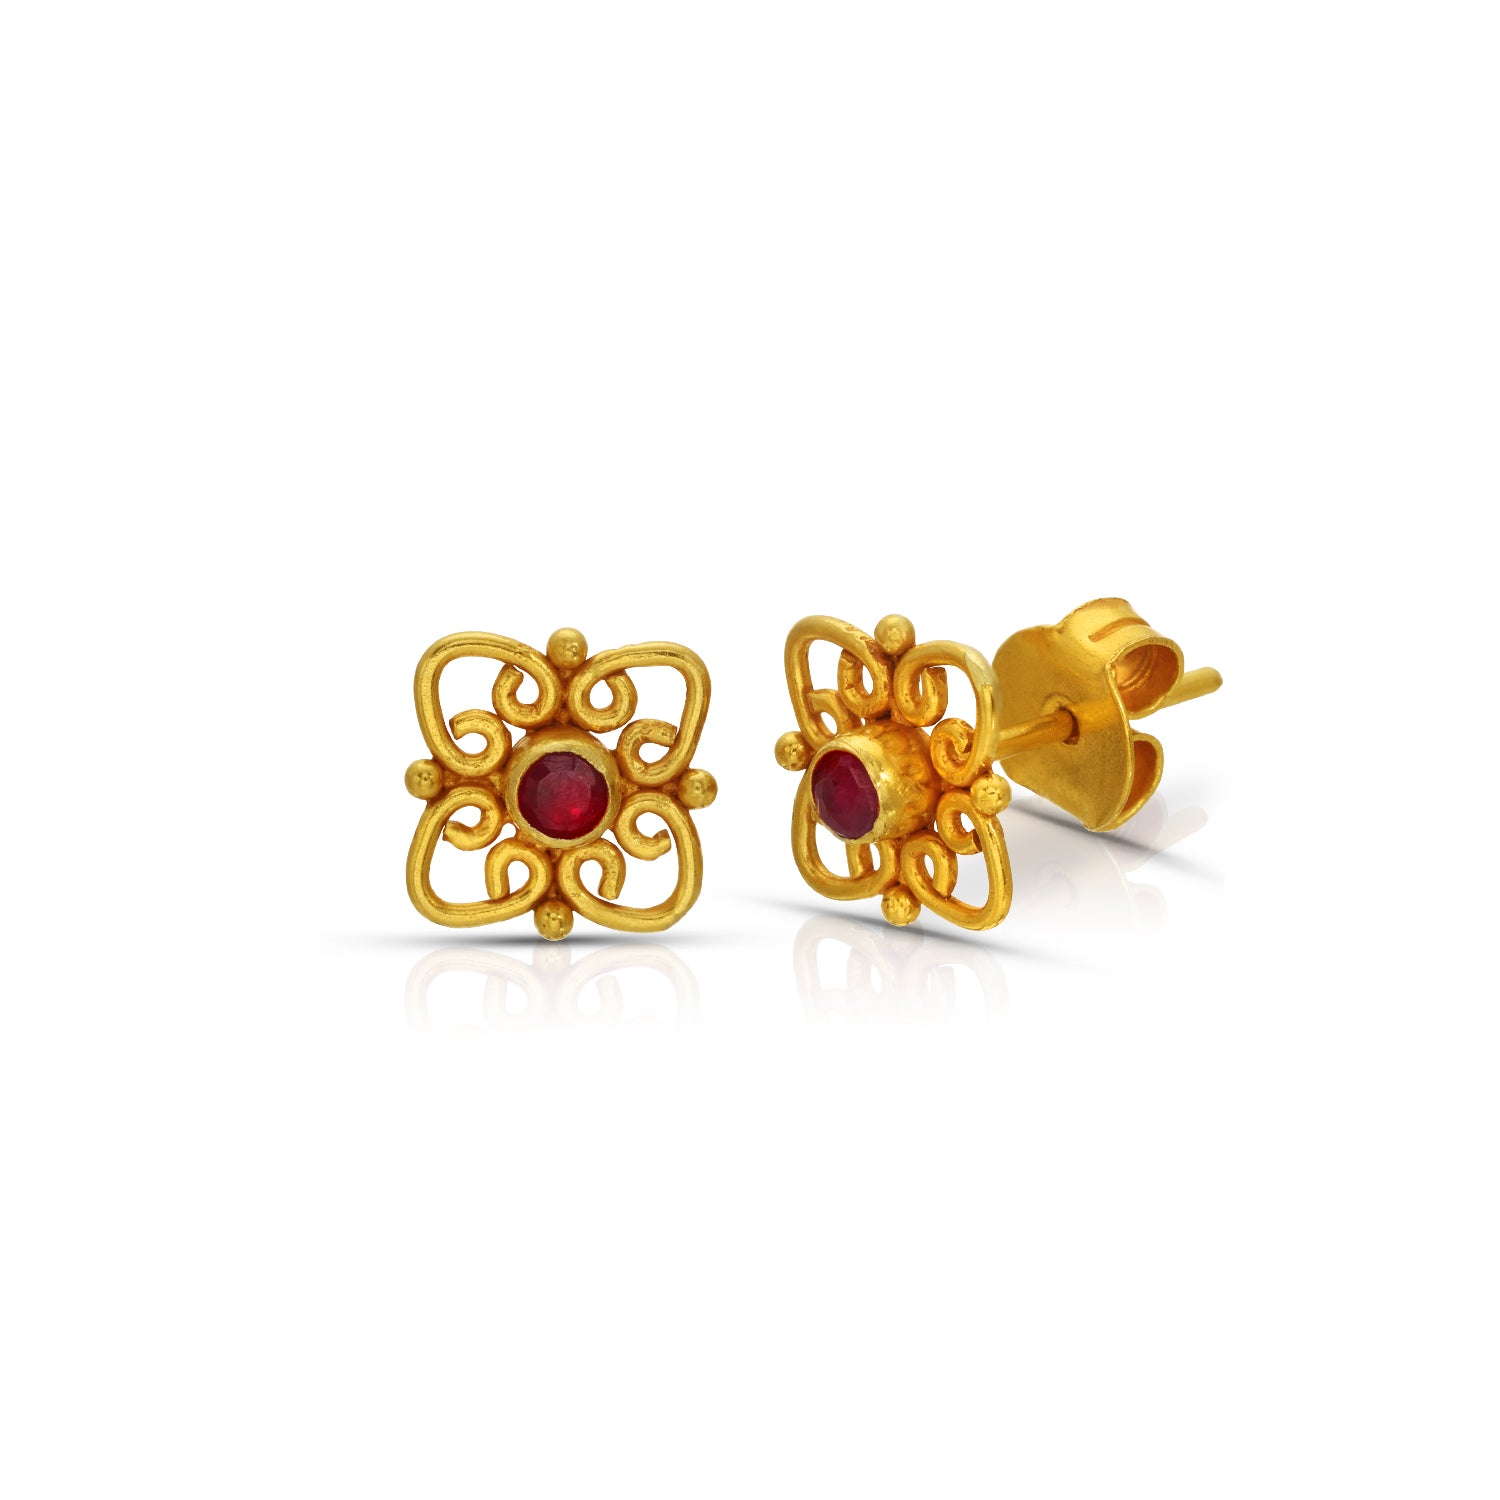 Ruby Rajasthan Gold Stud Earrings